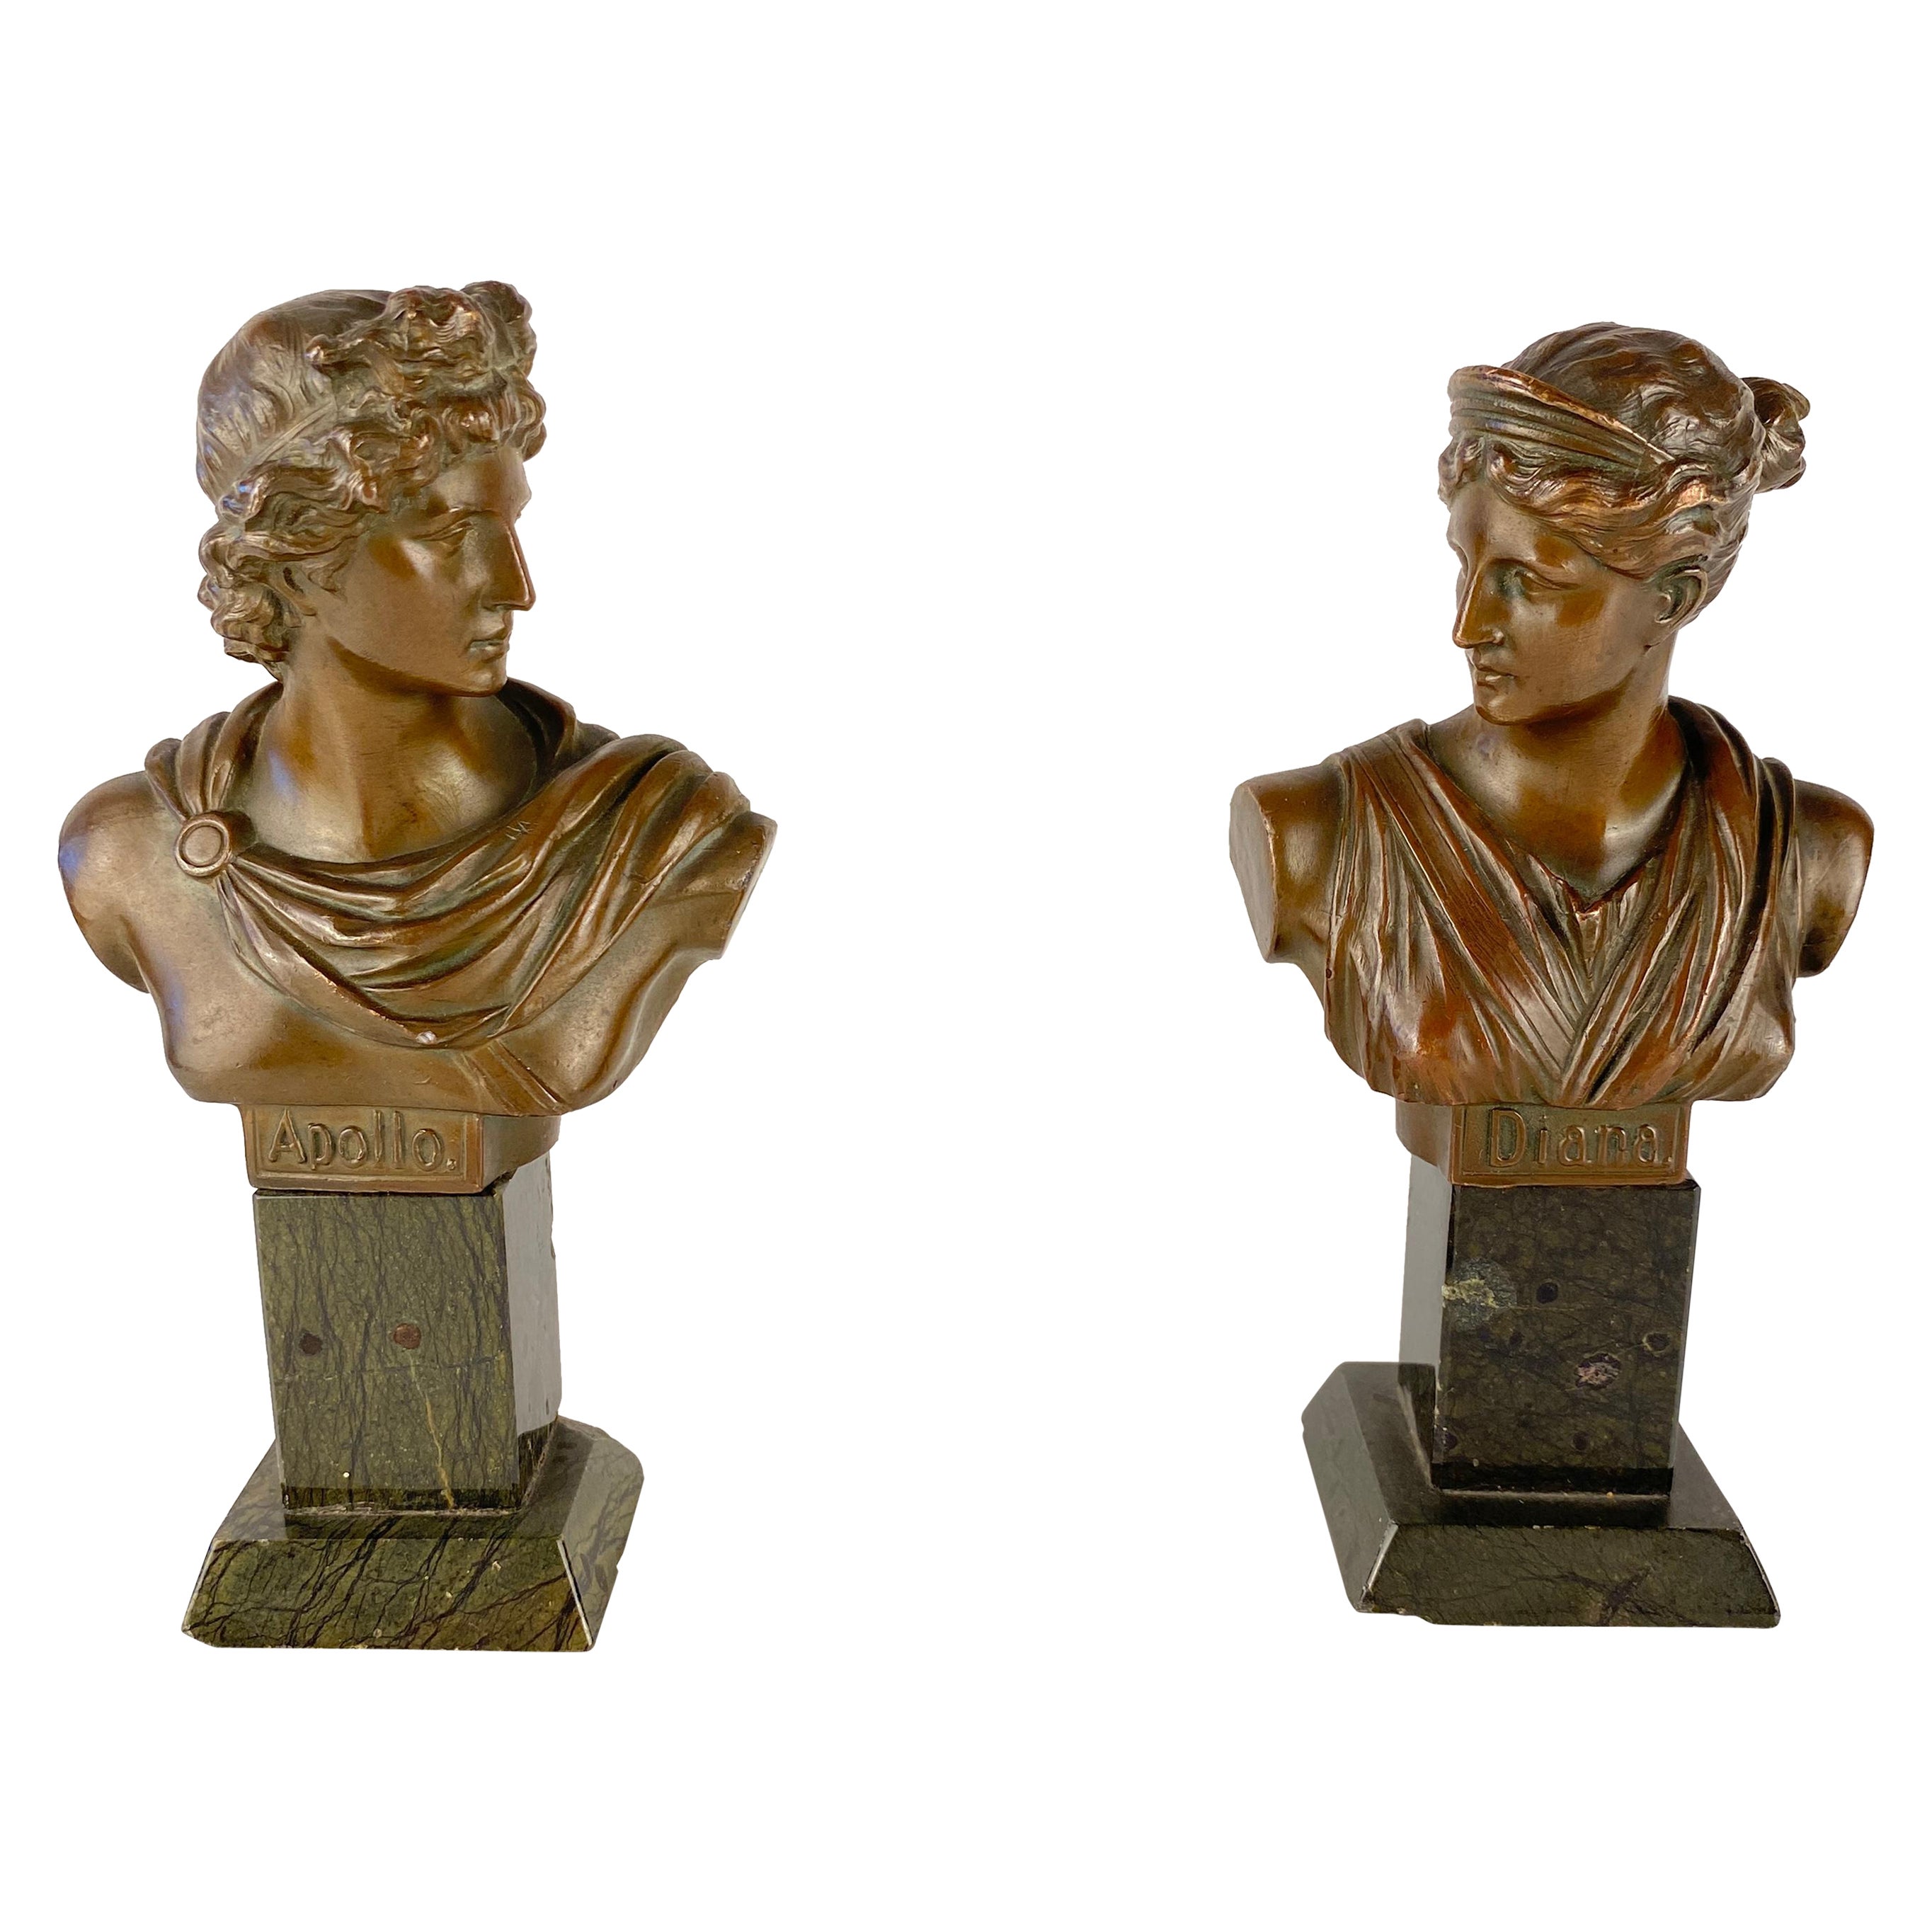 Paar neoklassizistische Bronzebüsten Apollo und Diana aus Bronze, montiert auf schwarzem Marmor